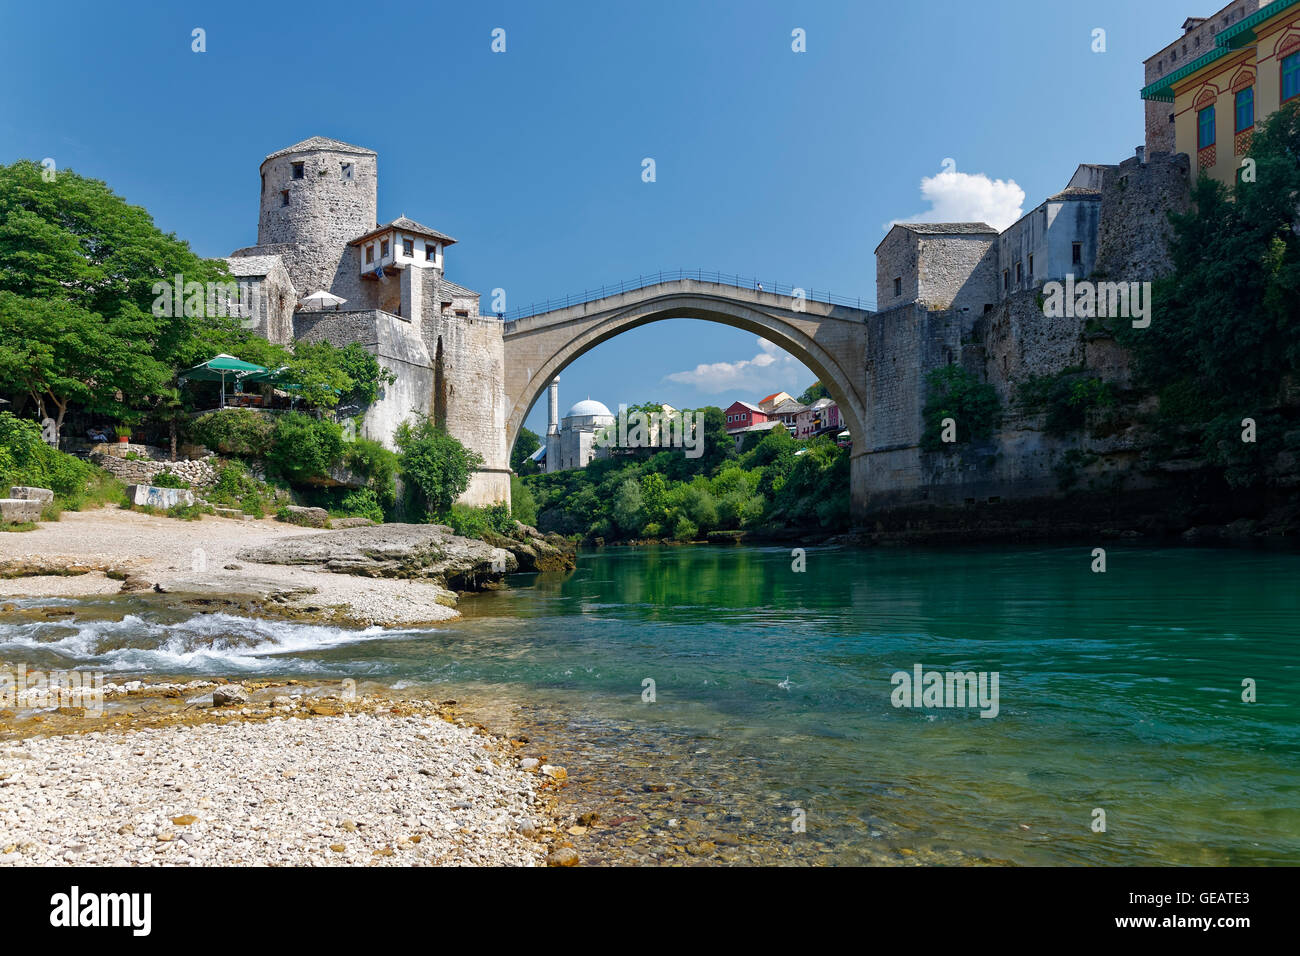 World Famous Architecture 3Dpuzzle  model Mostar bridge Bosnia and Herzegovina